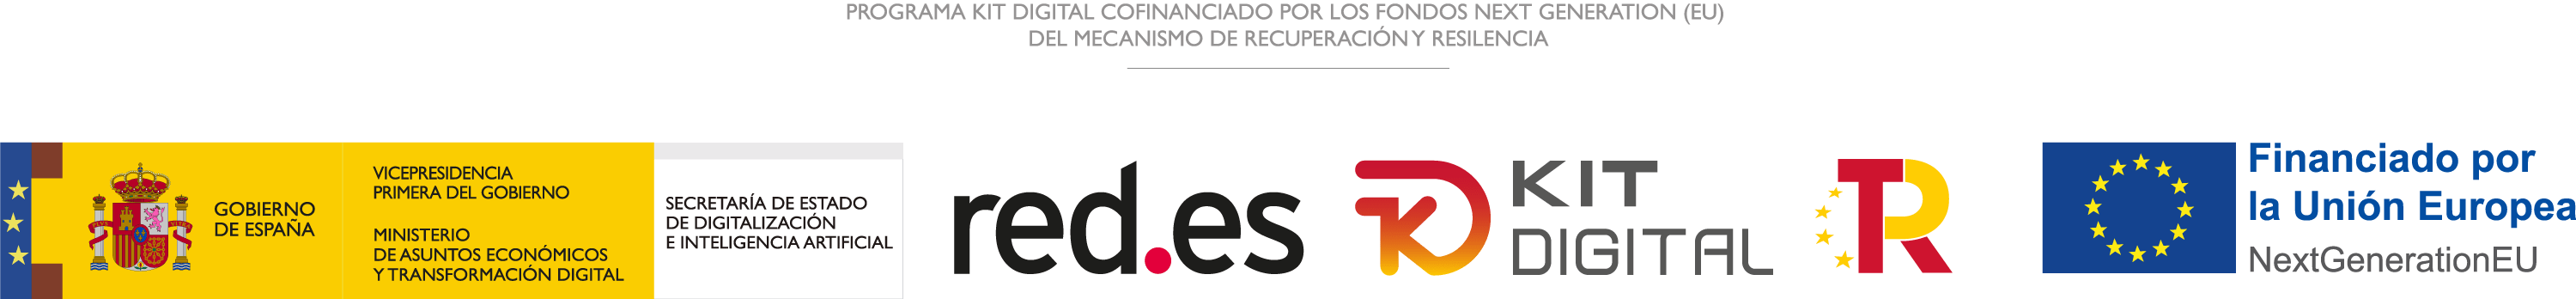 Logo-digitalizadores-carlosmarca-web-barcelona